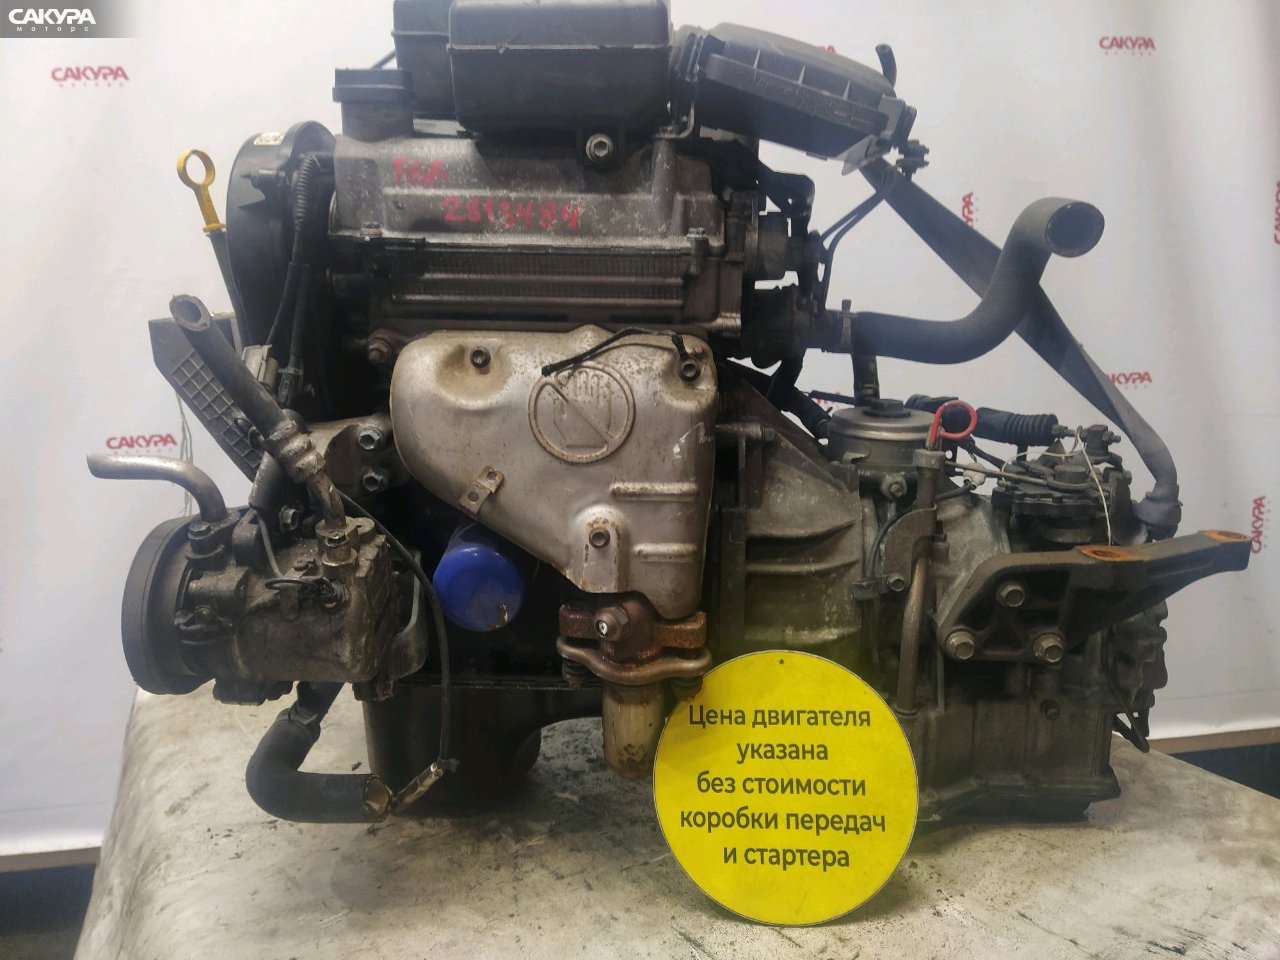 Двигатель Suzuki Wagon R MC11S F6A: купить в Сакура Красноярск.